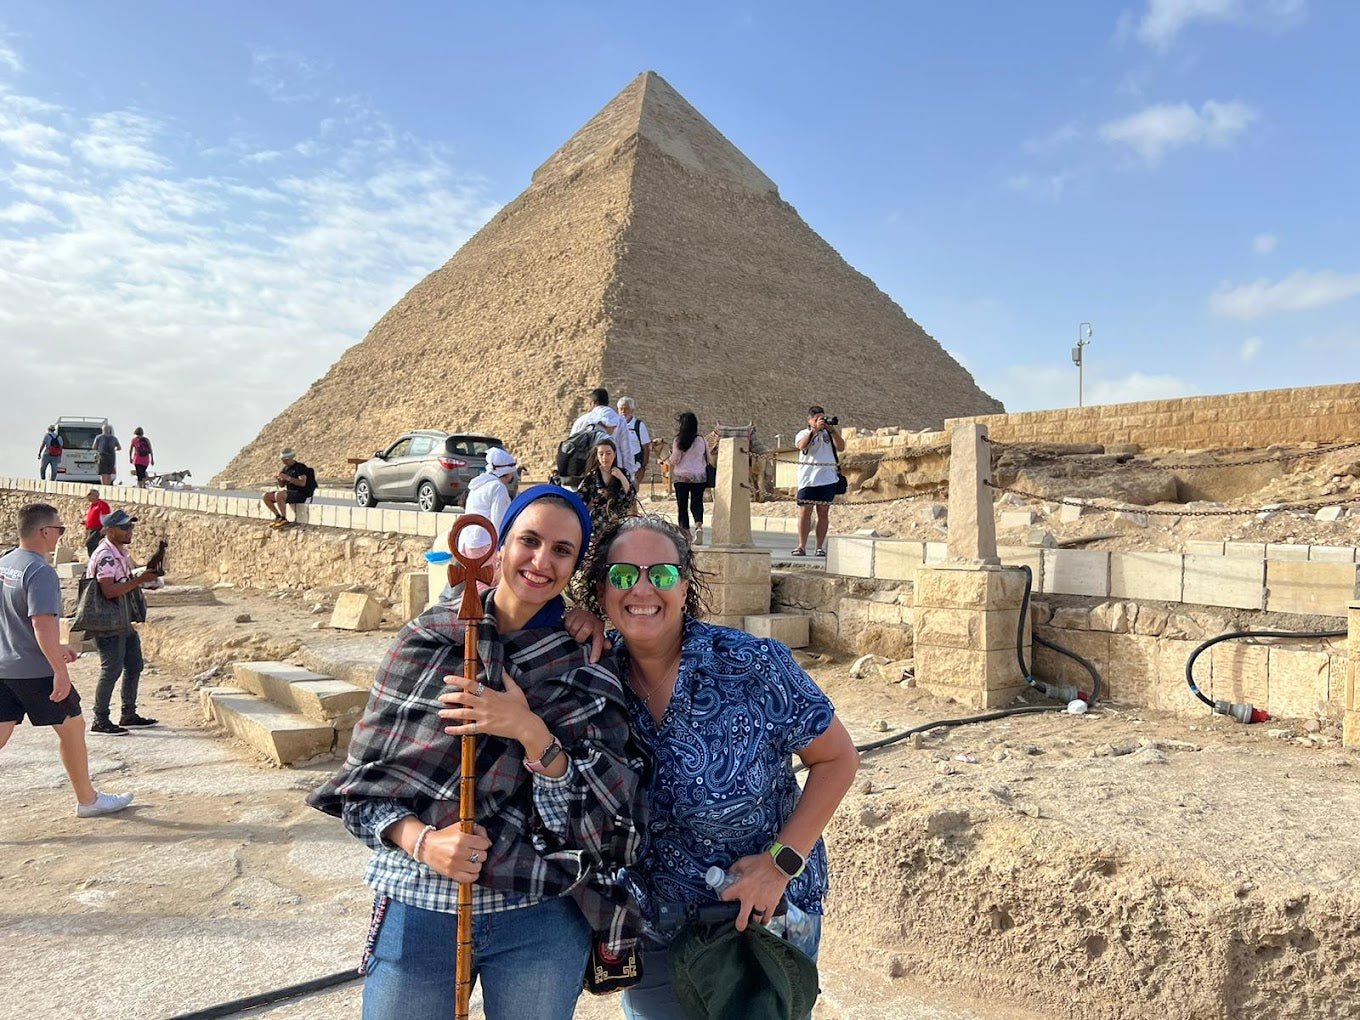 الجيزة في يوم واحد: زيارة أهرامات الجيزة وأبو الهول وسقارة والمتحف المصري الكبير